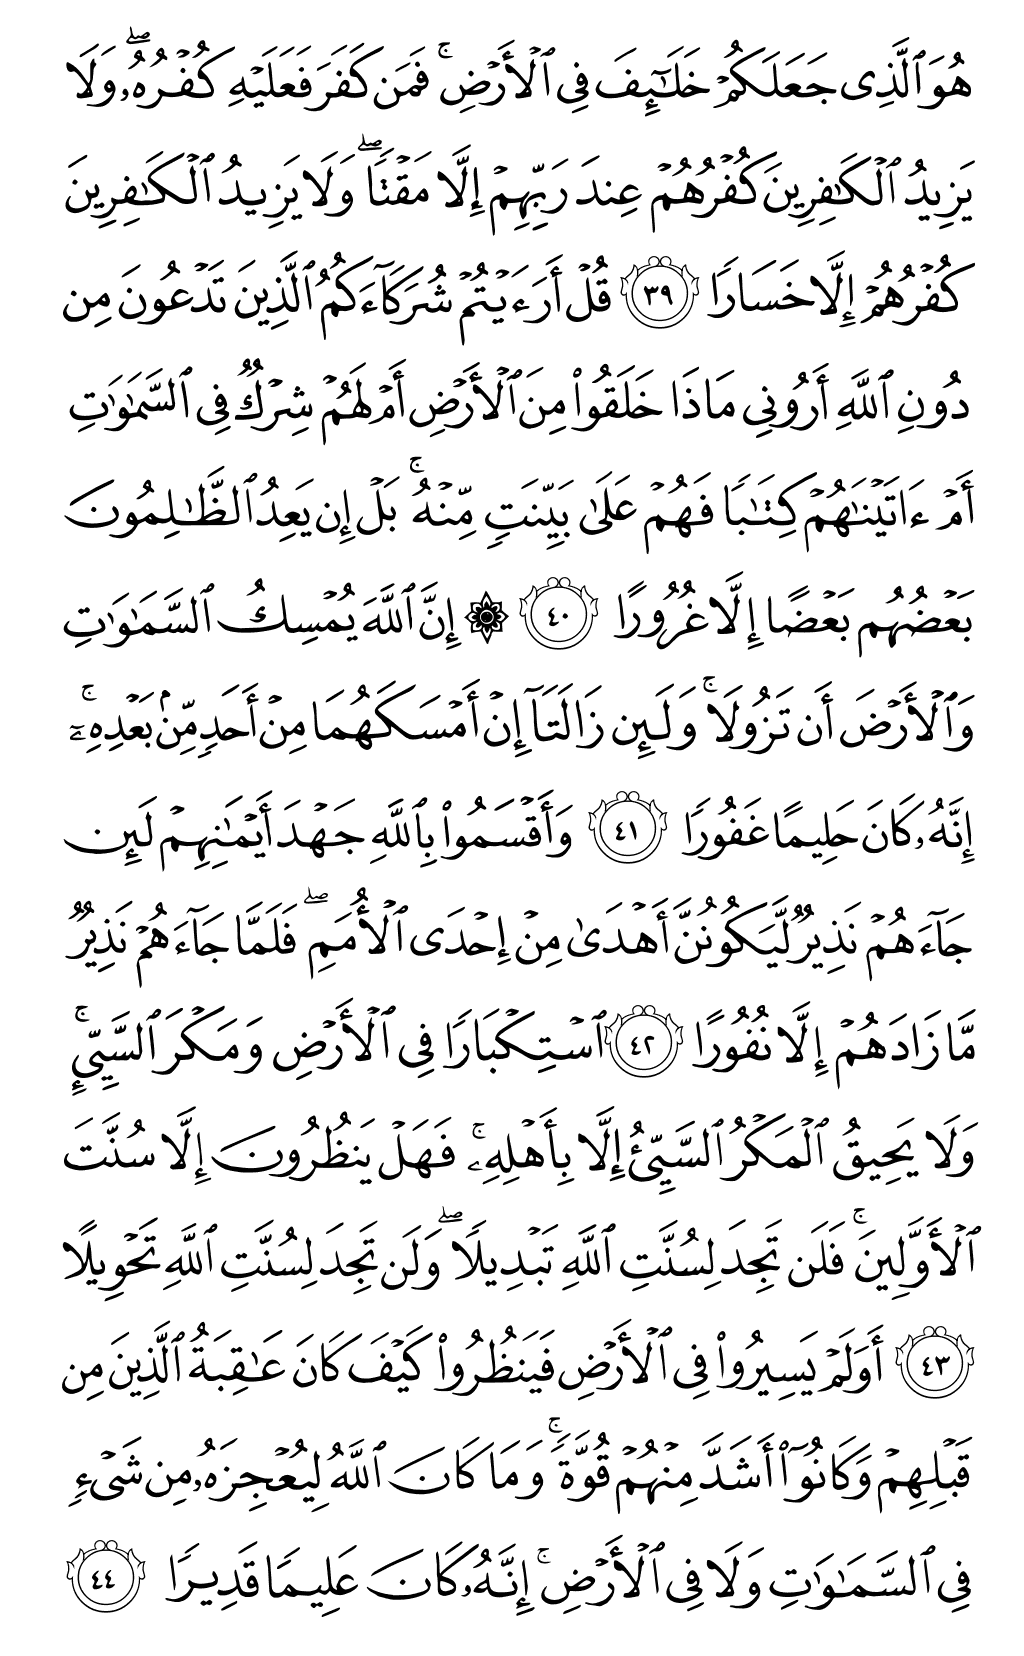 الصفحة رقم 439 من القرآن الكريم